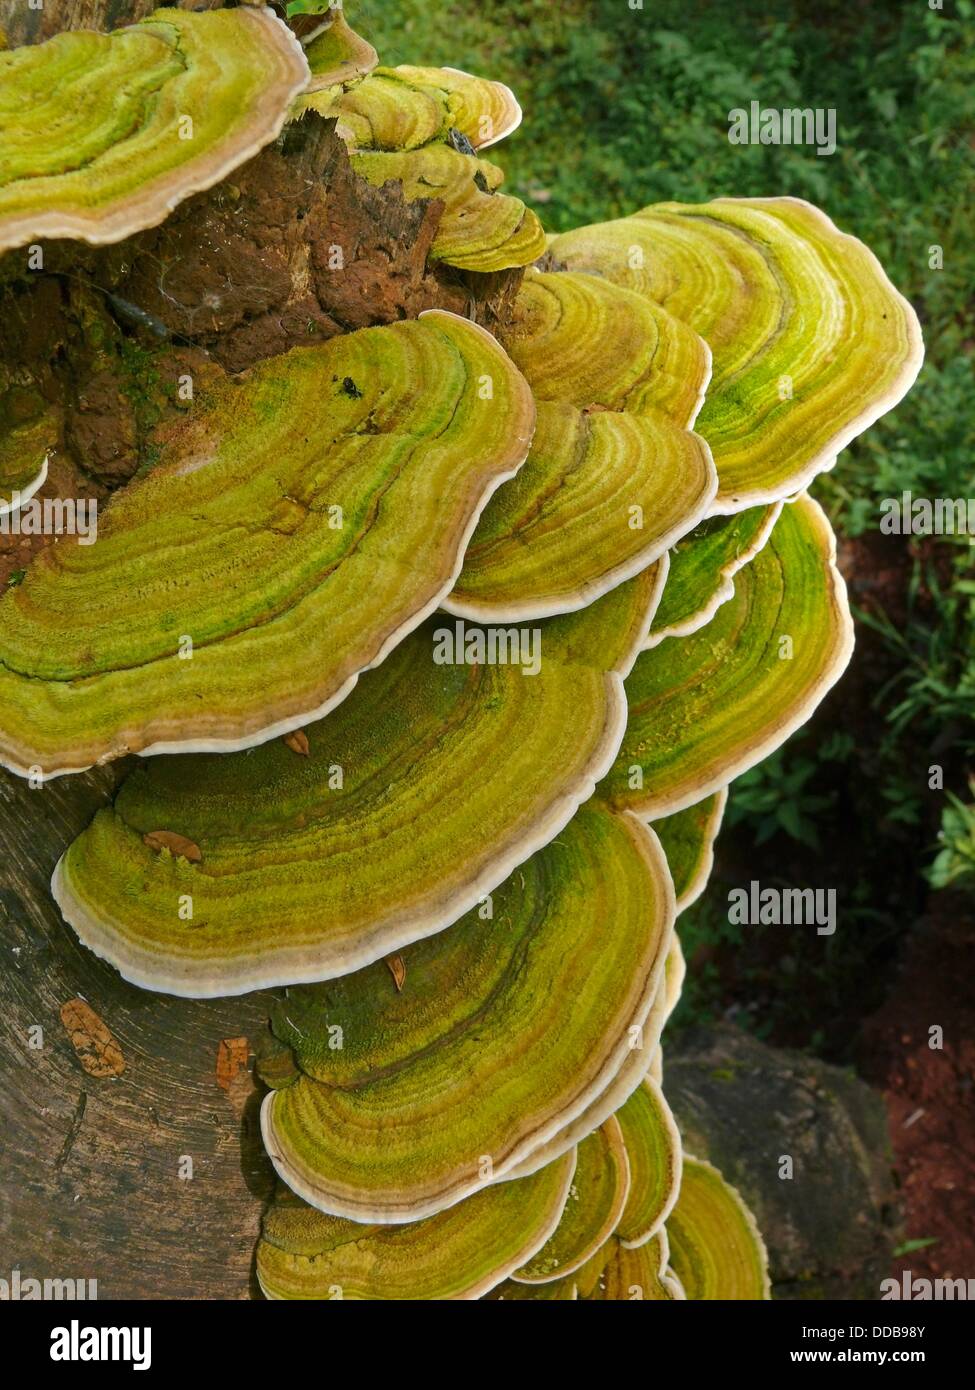 Bracket Fungi Or Shelf Fungi Phylum Basidiomycota Stock Photo Alamy